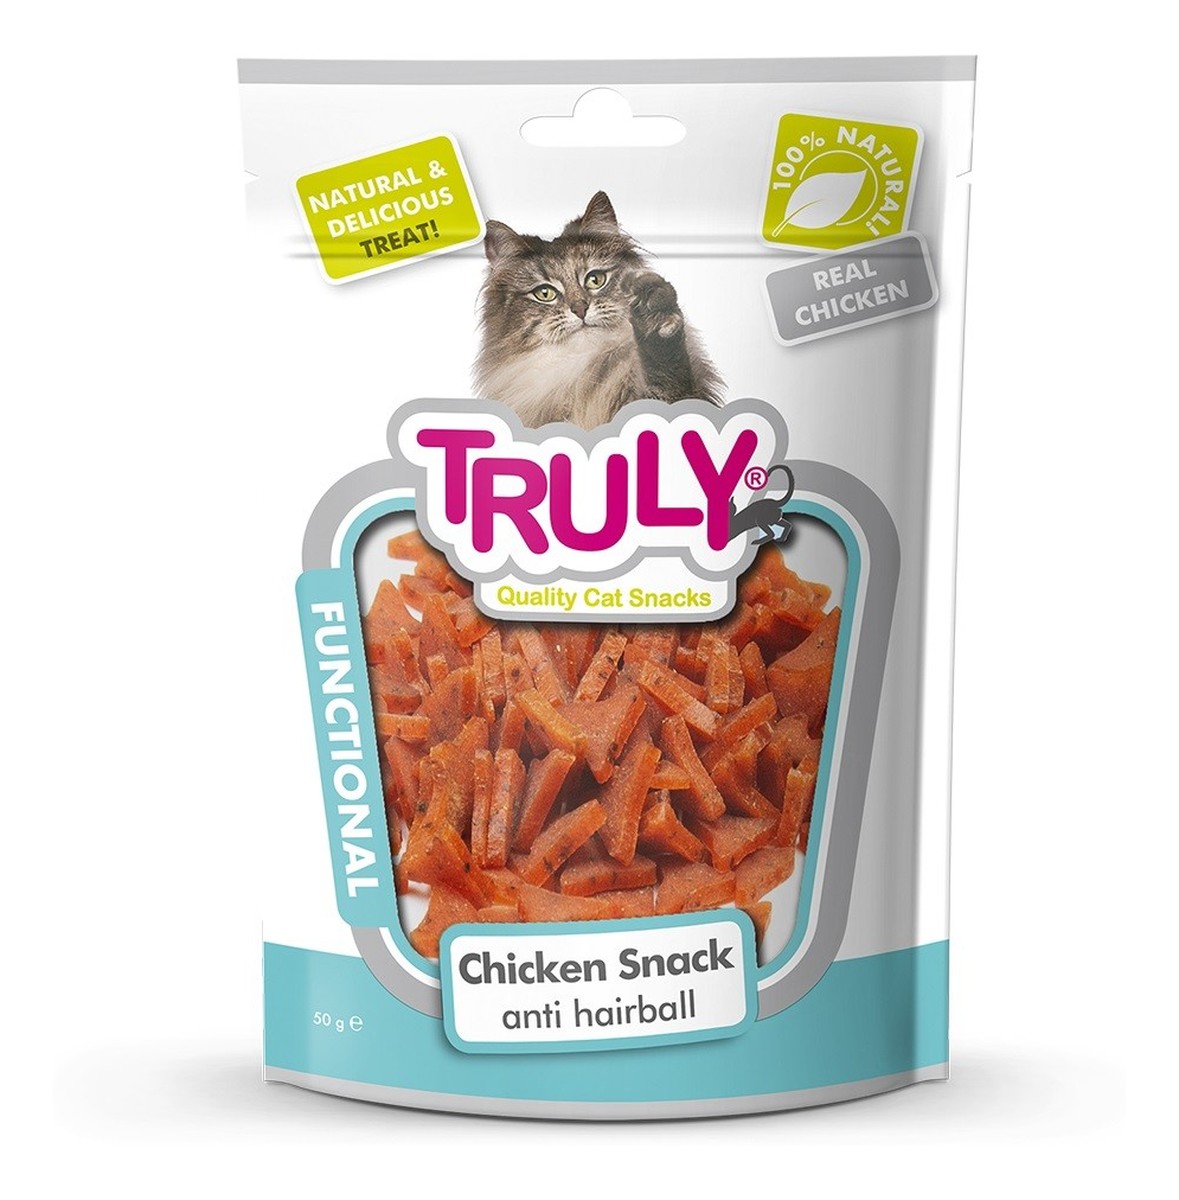 Cat snacks przekąski dla kota functional-kawałki kurczaka i tauryna (antykłaczkowa)